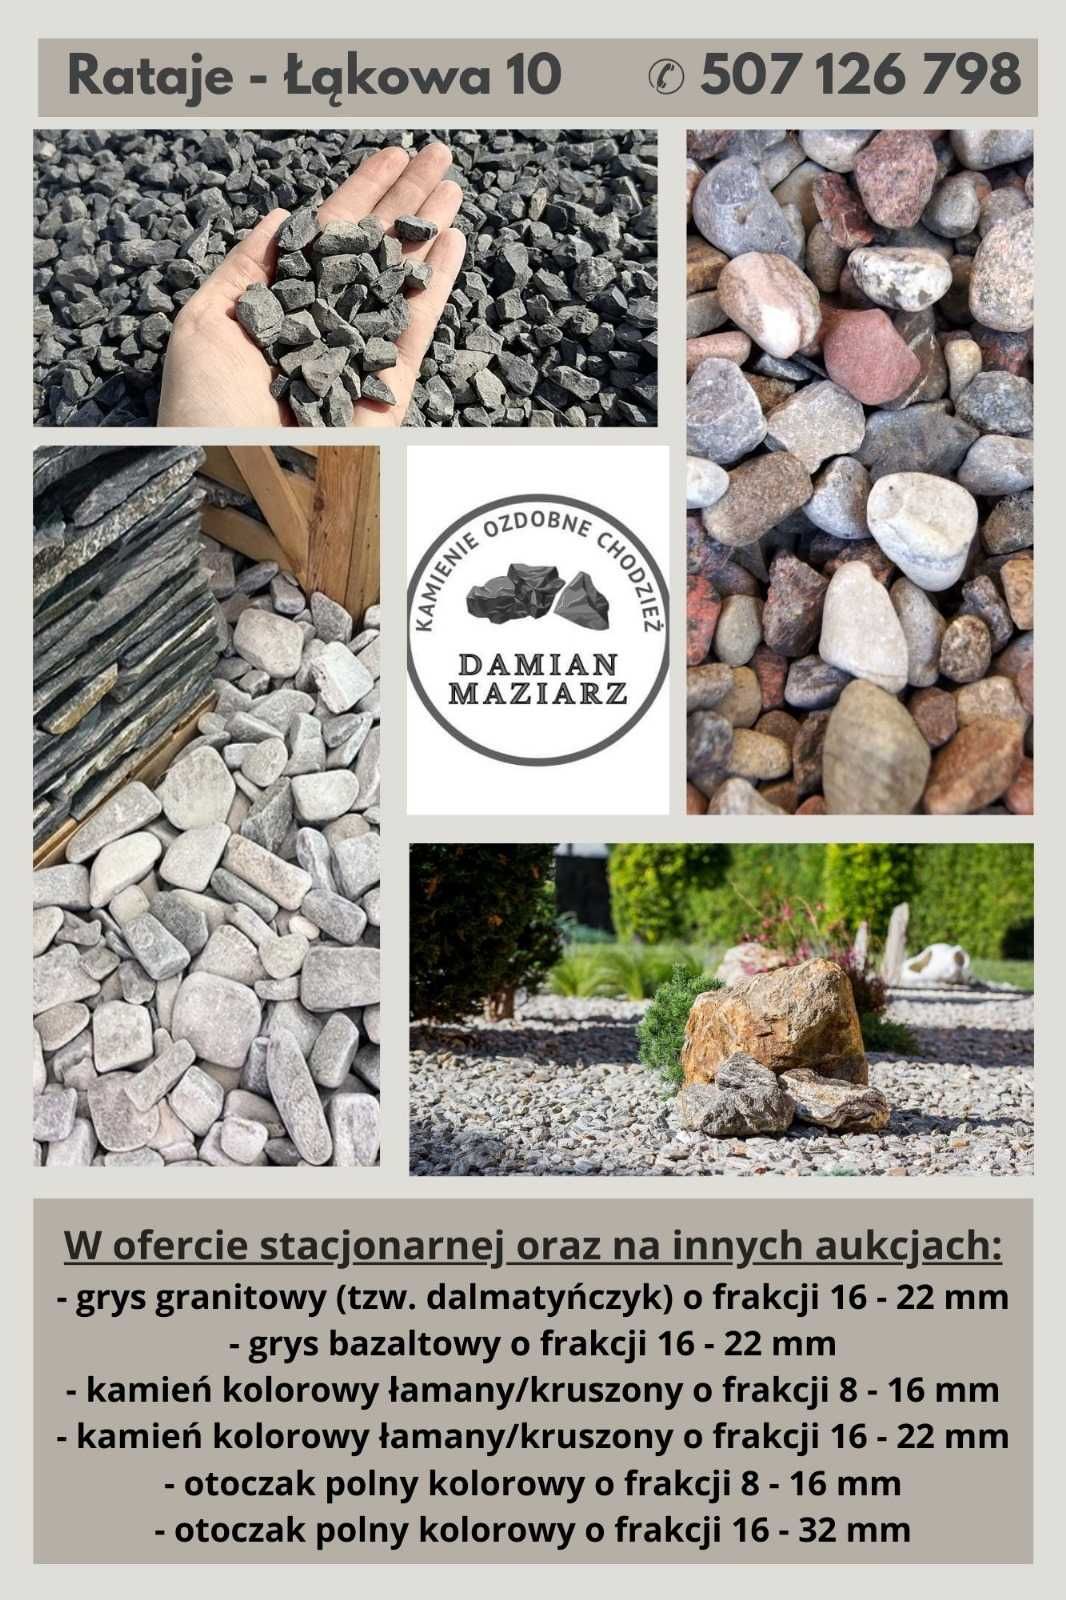 Kamienie ozdobne - grys granitowy dalmatyńczyk 16-22